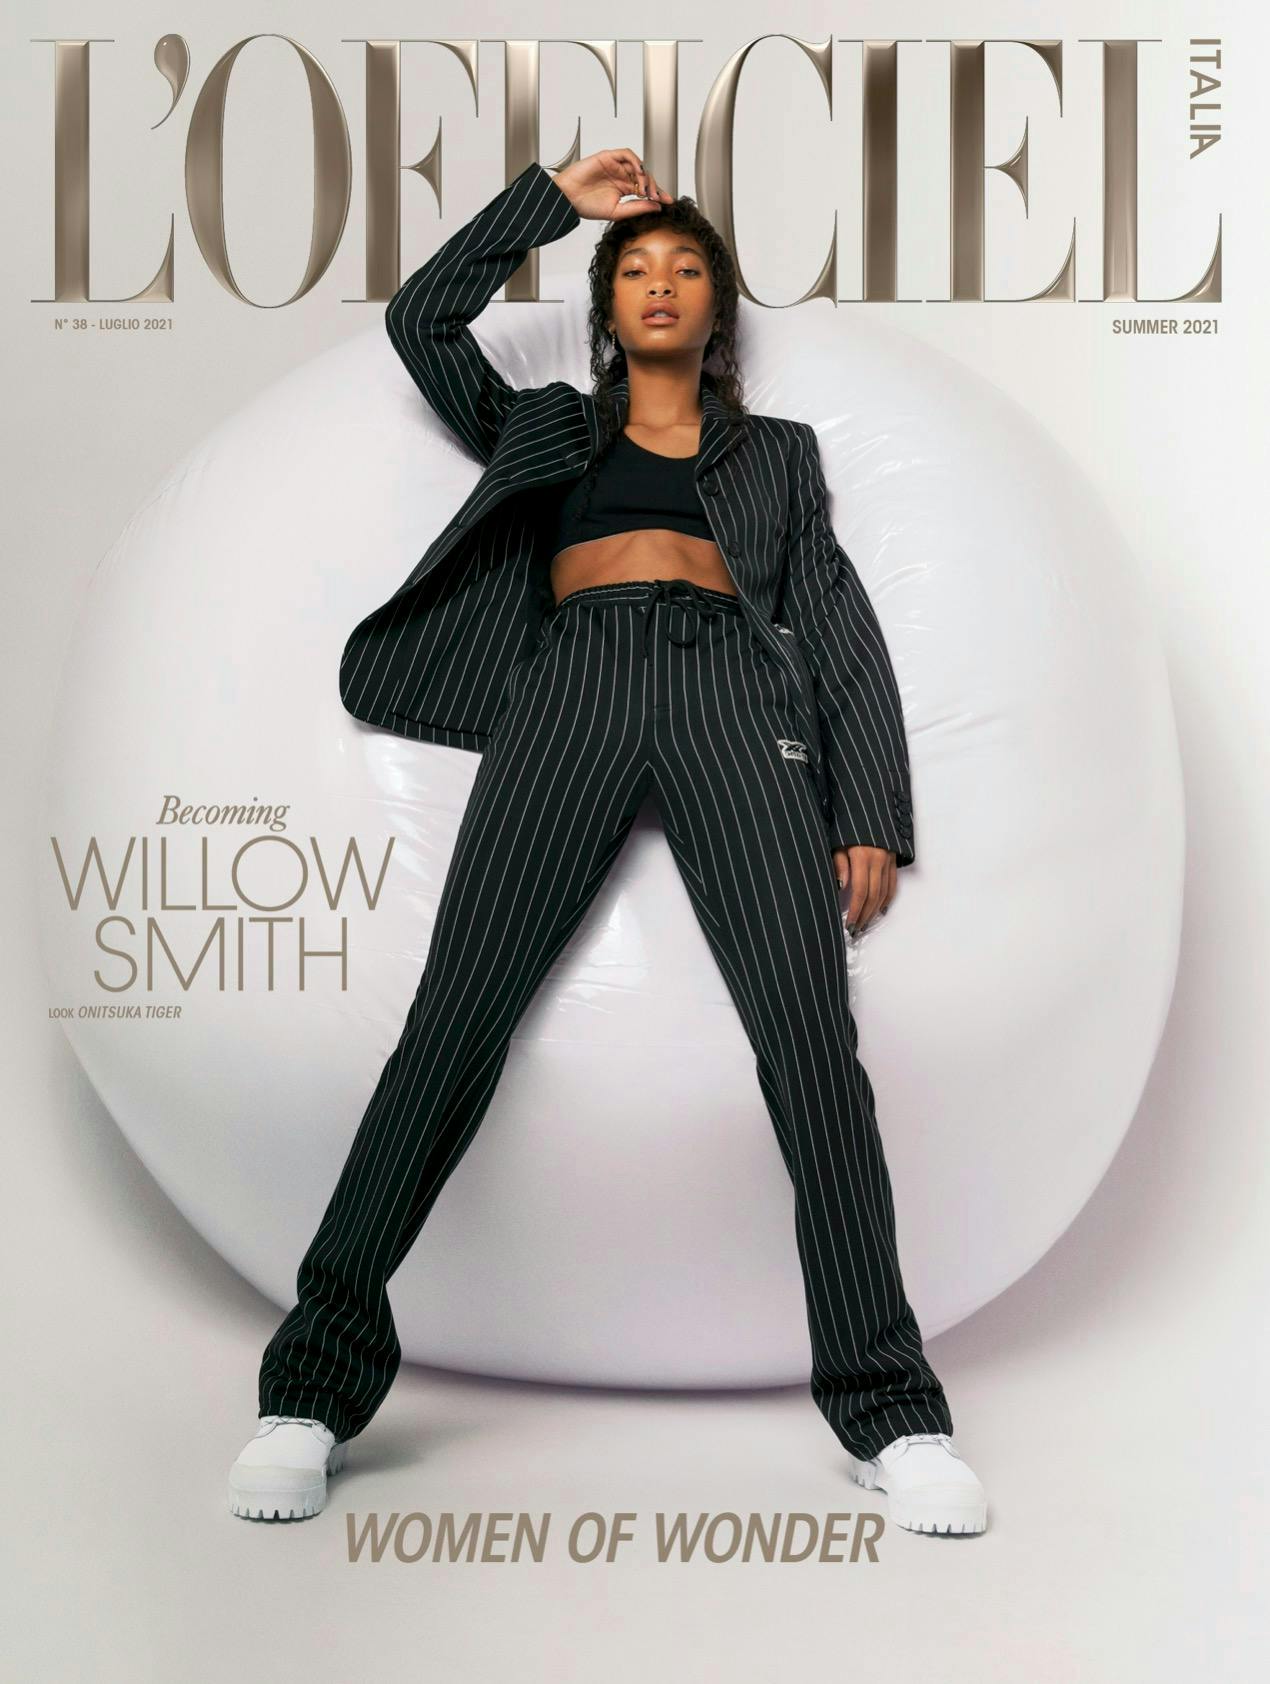 Nella foto Willow Smith in cover indossa giacca, bra, pantaloni e sneakers, ONITSUKA TIGER.